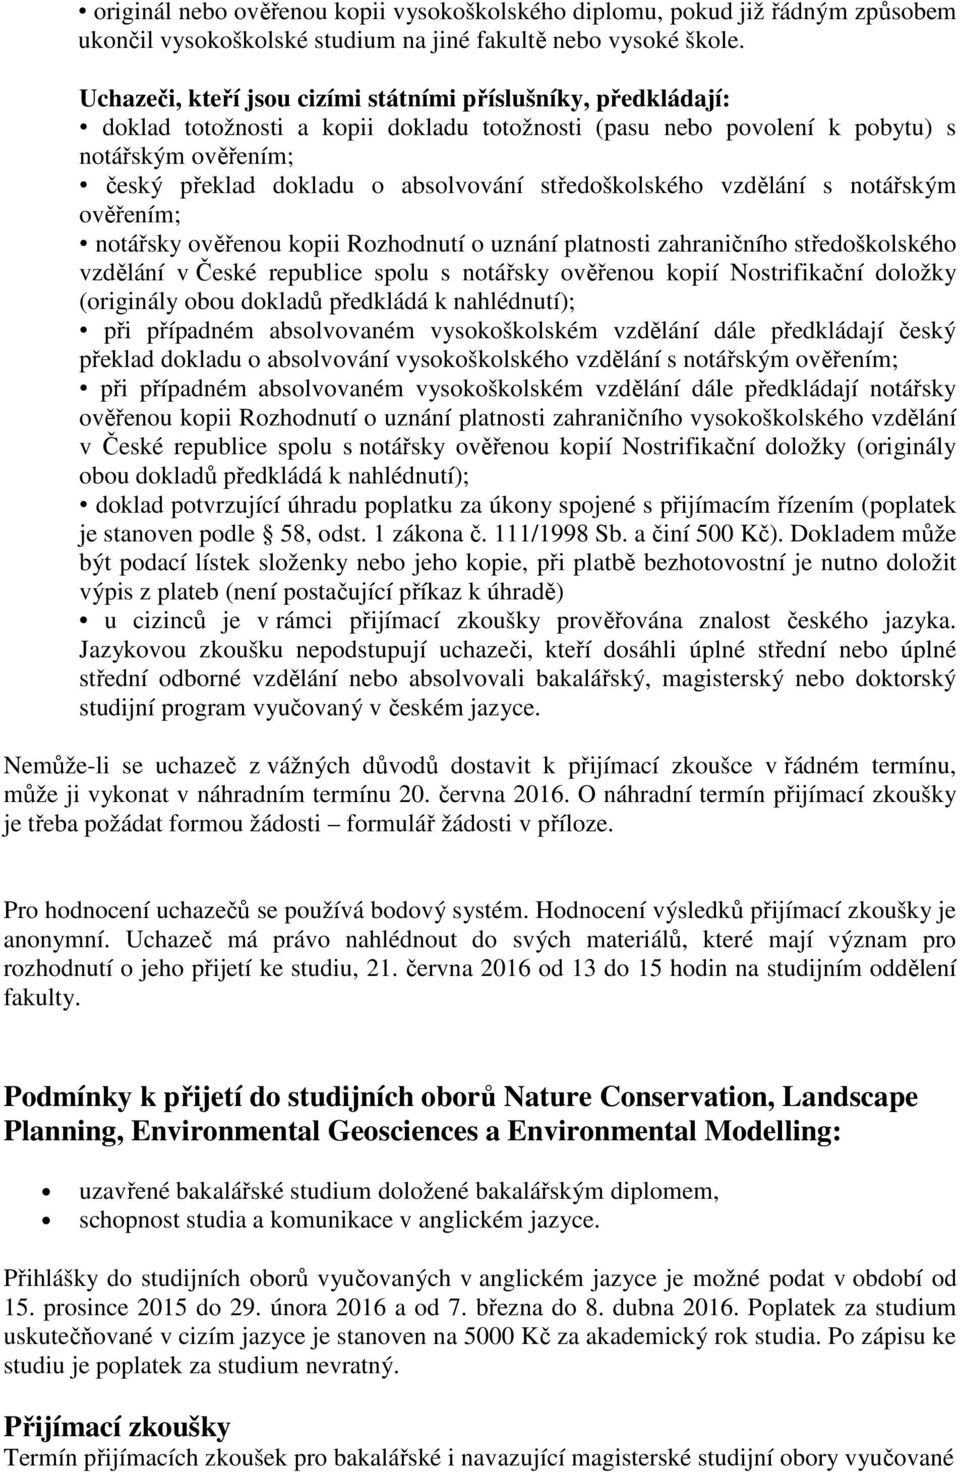 Přijímací řízení na Fakultě životního prostředí - PDF Free Download